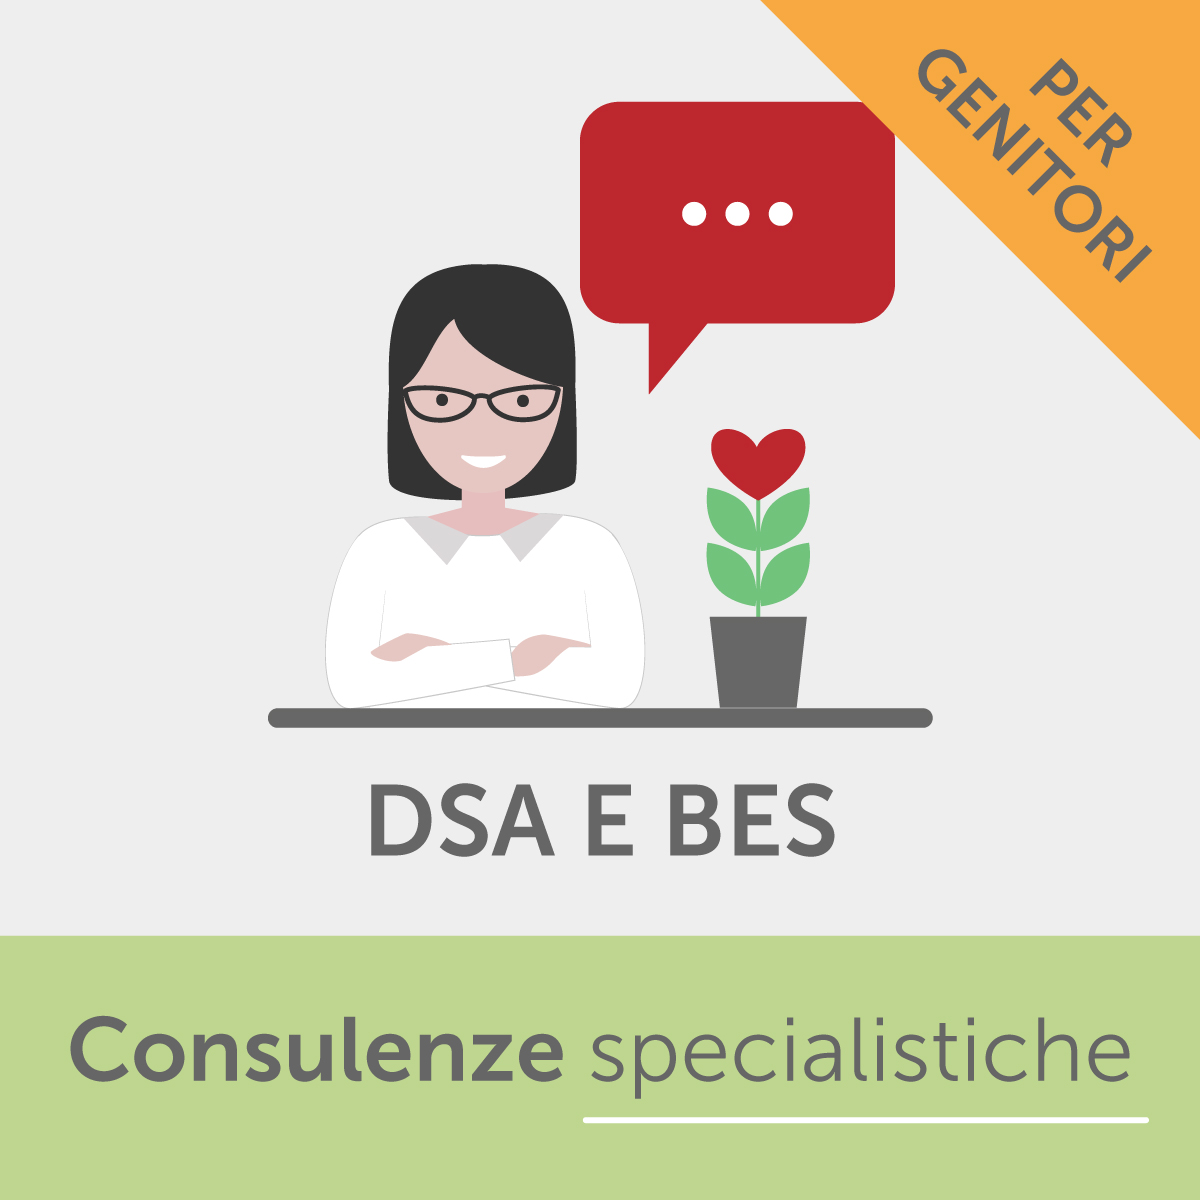 Consulenza specialistica DSA e BES per genitori - 1 ora